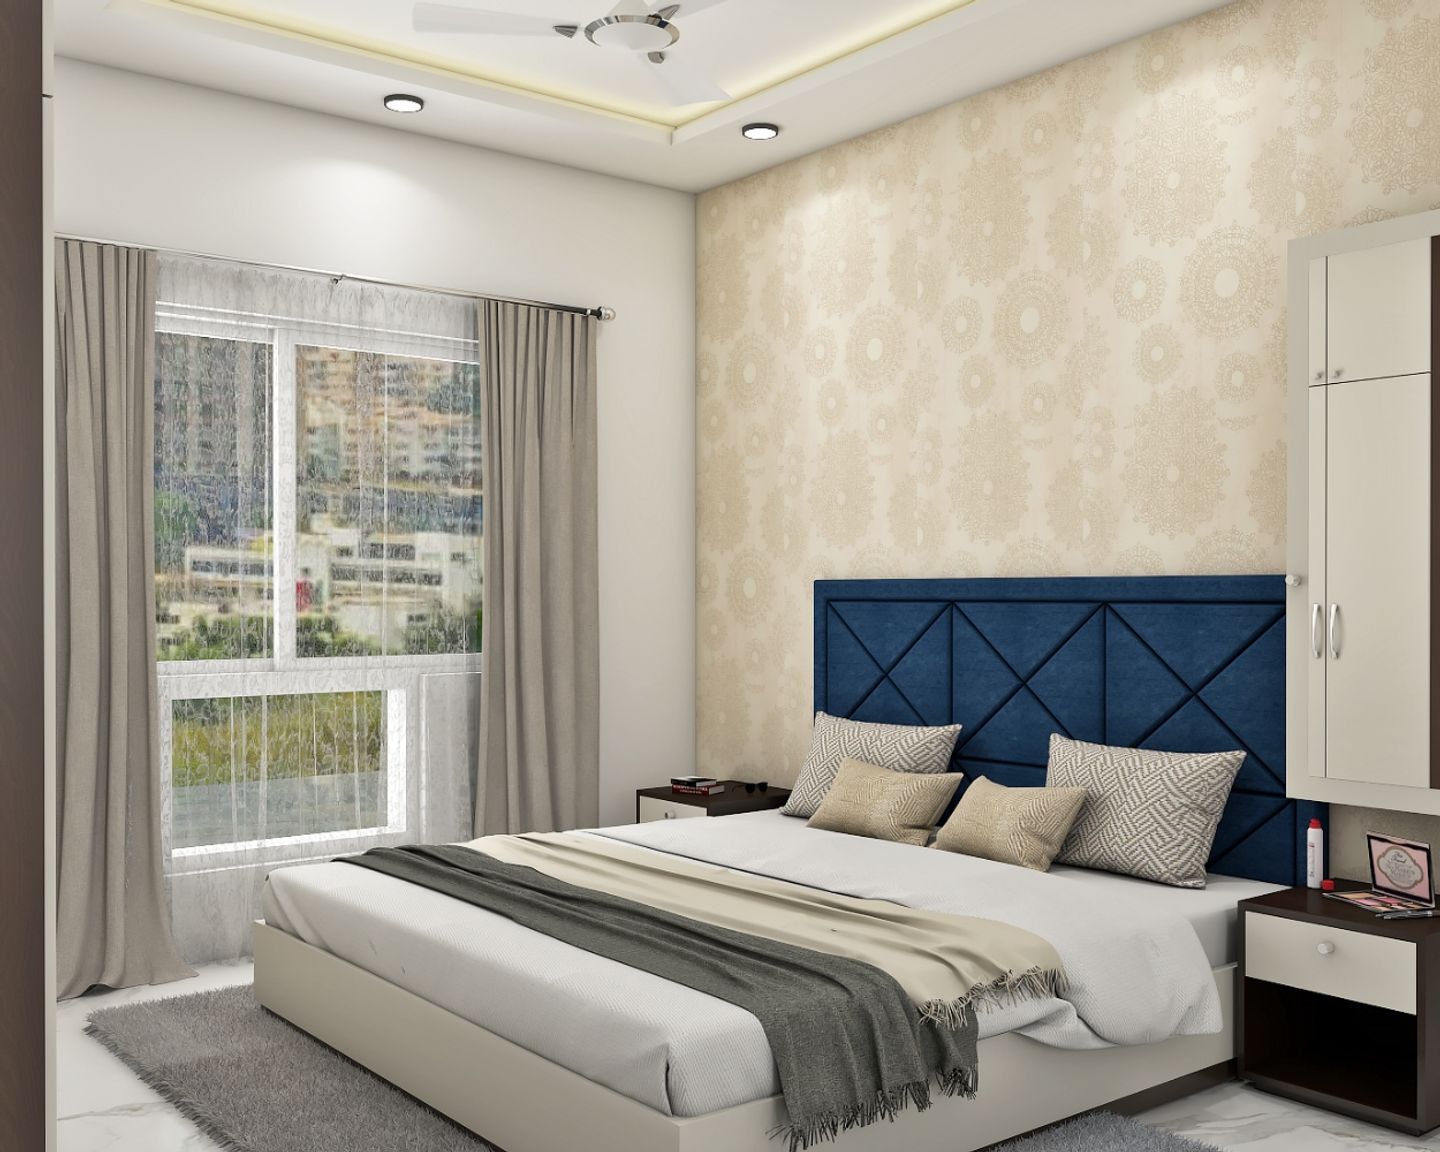 Beige Mandala Patterned Bedroom Wallpaper Design - Livspace